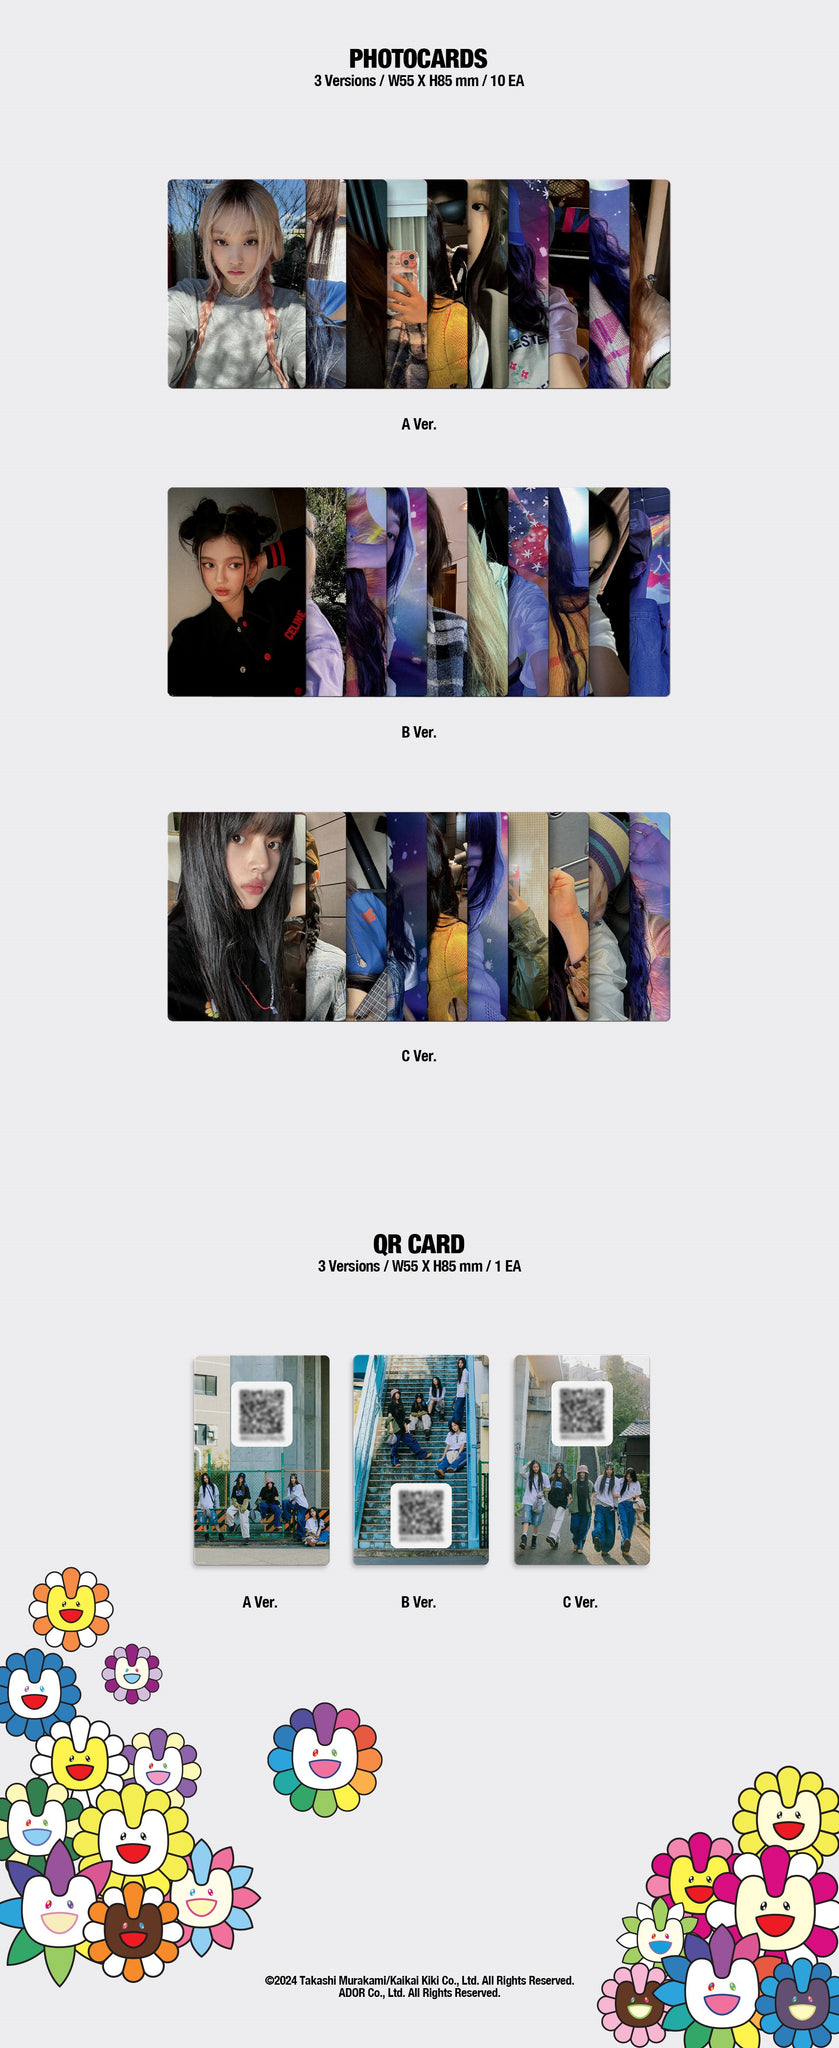 NewJeans Single Album Supernatural - Weverse Albums Version Inclusions: Photocard Set, QR Card